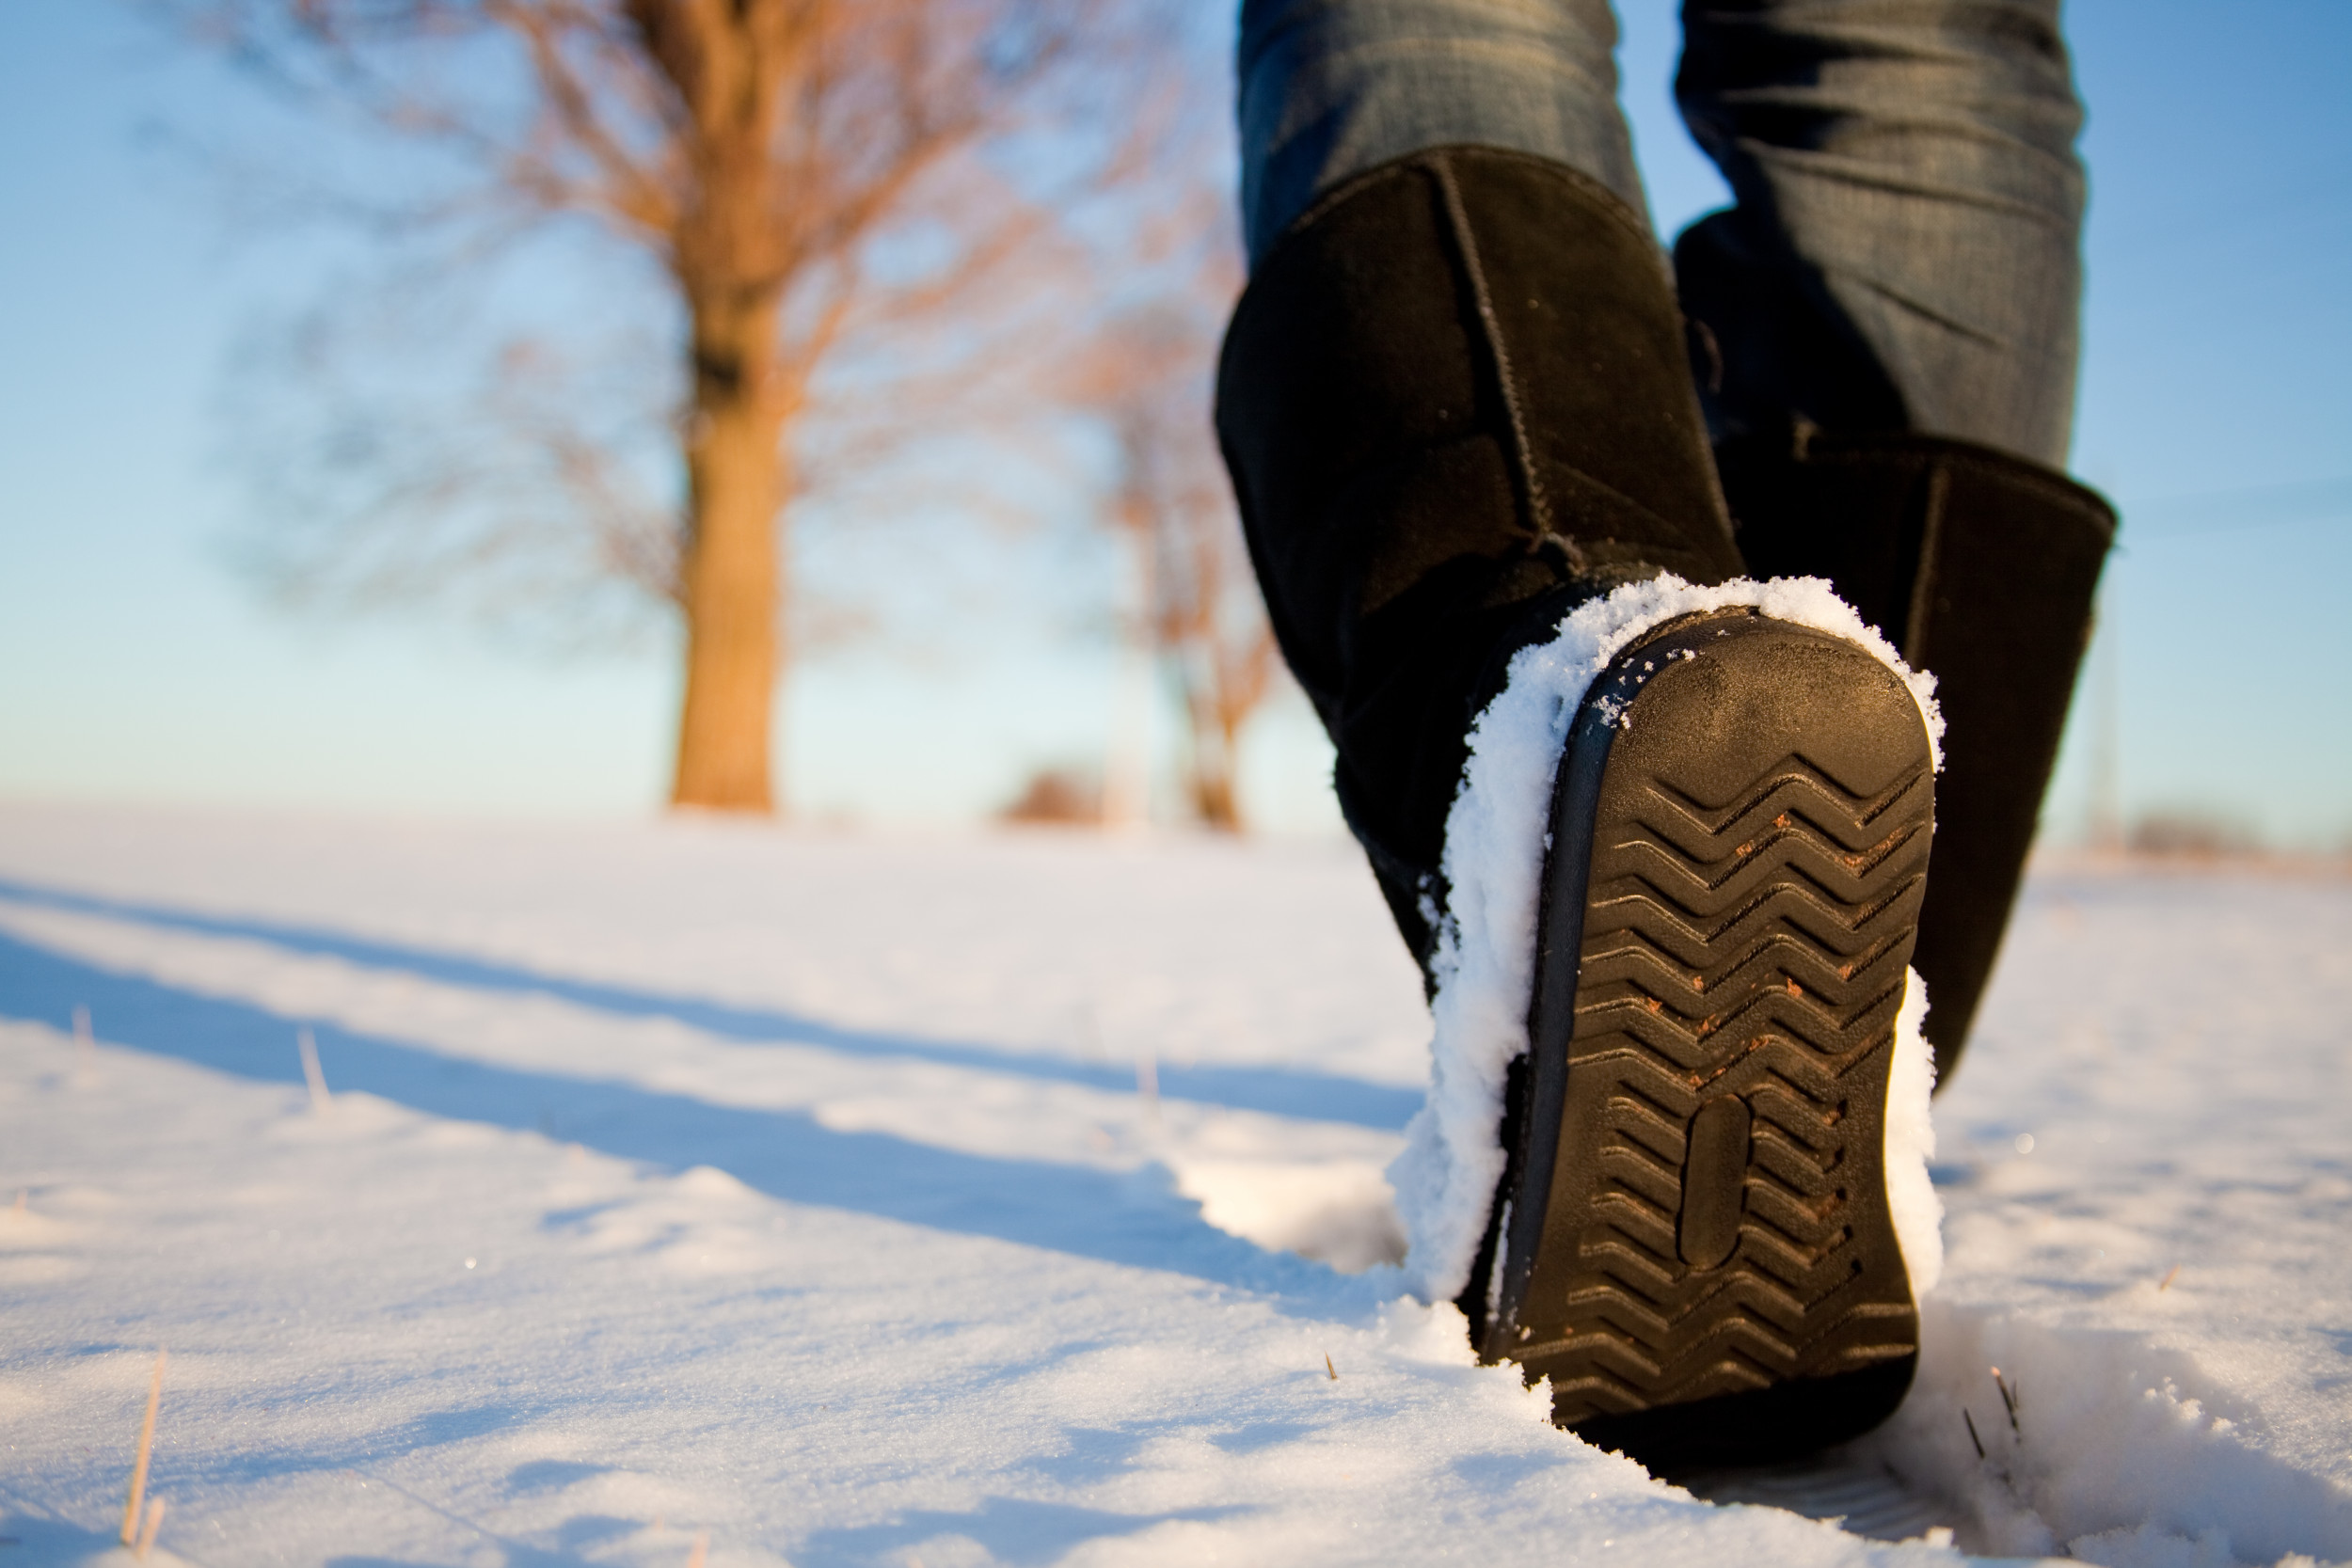 Лучшая зимняя подошва. Зимняя обувь. Ходьба по снегу. Снег под ногами. Пешие прогулки зимой.